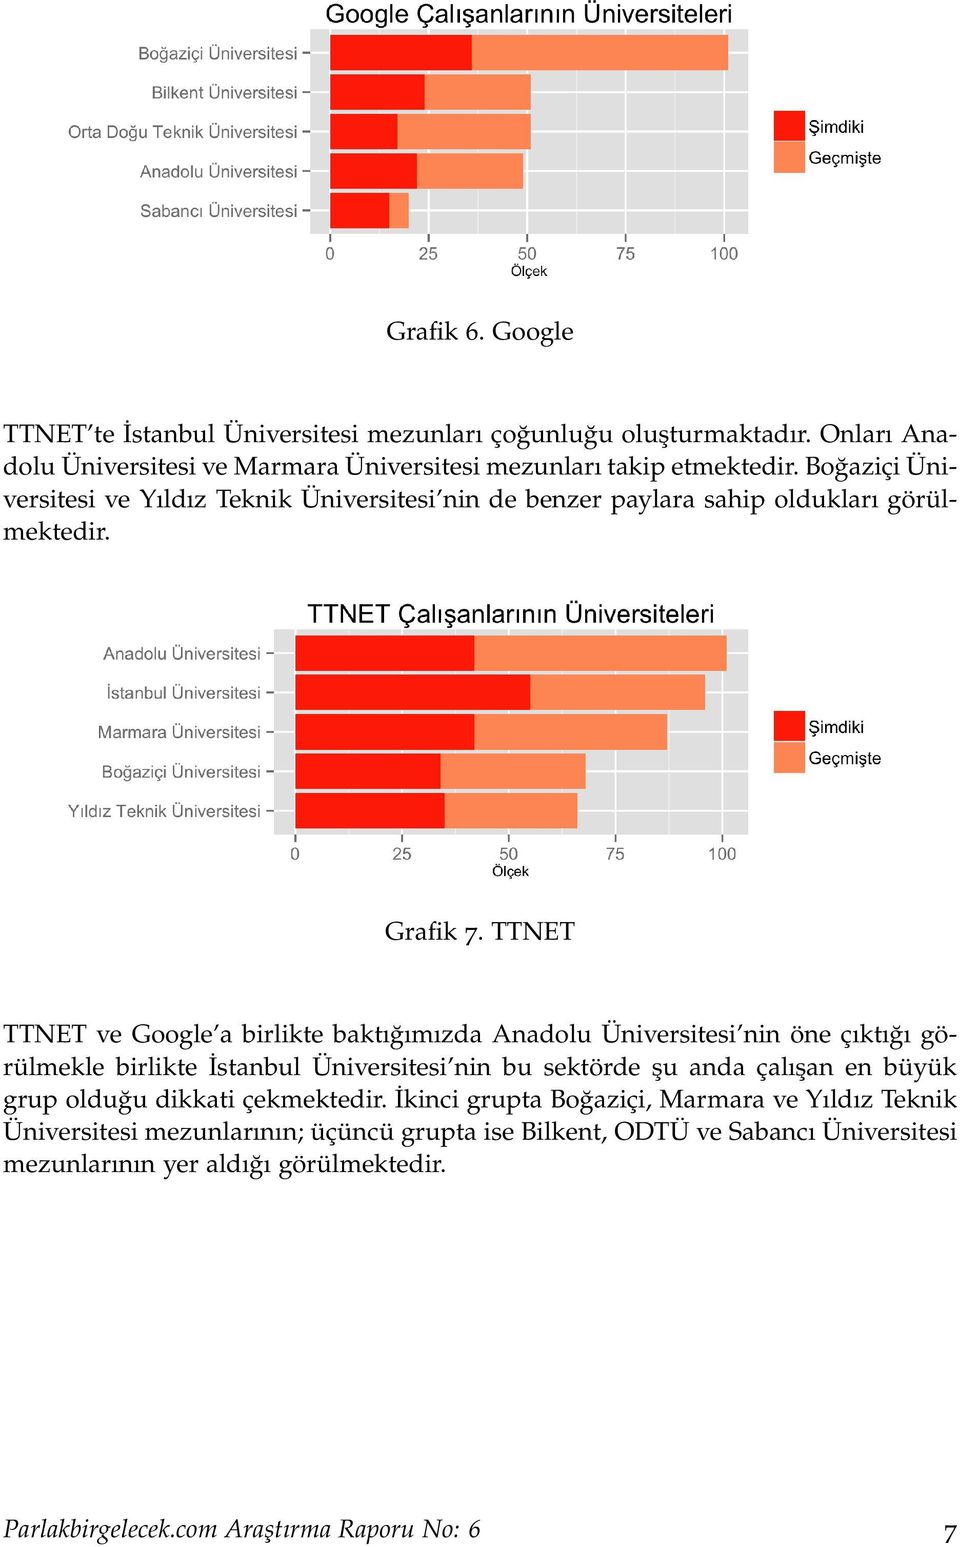 TTNET TTNET ve Google a birlikte baktığımızda Anadolu Üniversitesi nin öne çıktığı görülmekle birlikte İstanbul Üniversitesi nin bu sektörde şu anda çalışan en büyük grup